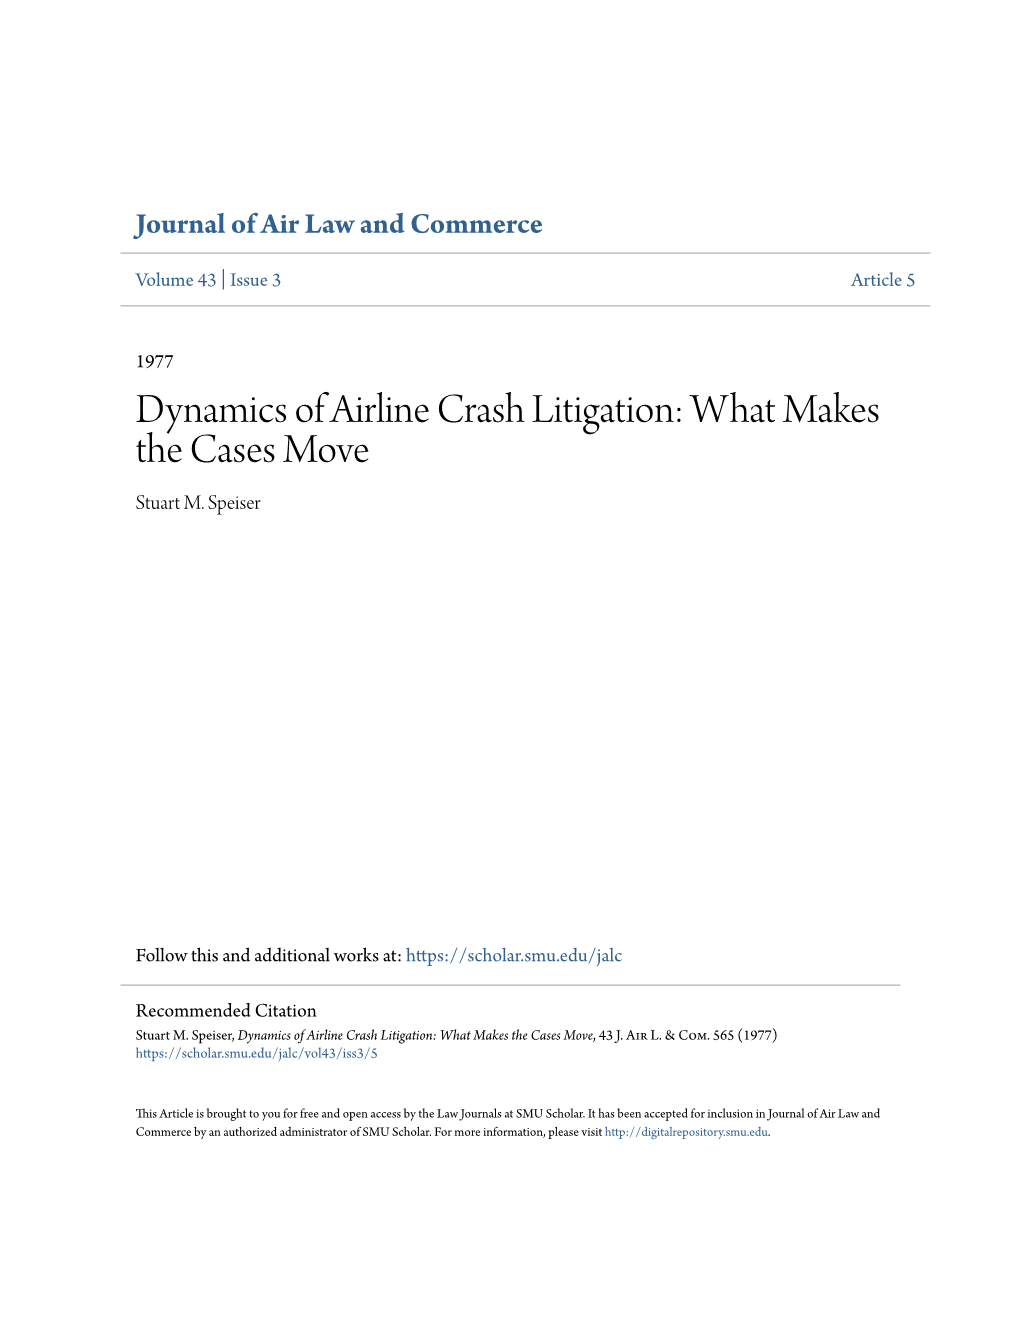 Dynamics of Airline Crash Litigation: What Makes the Cases Move Stuart M